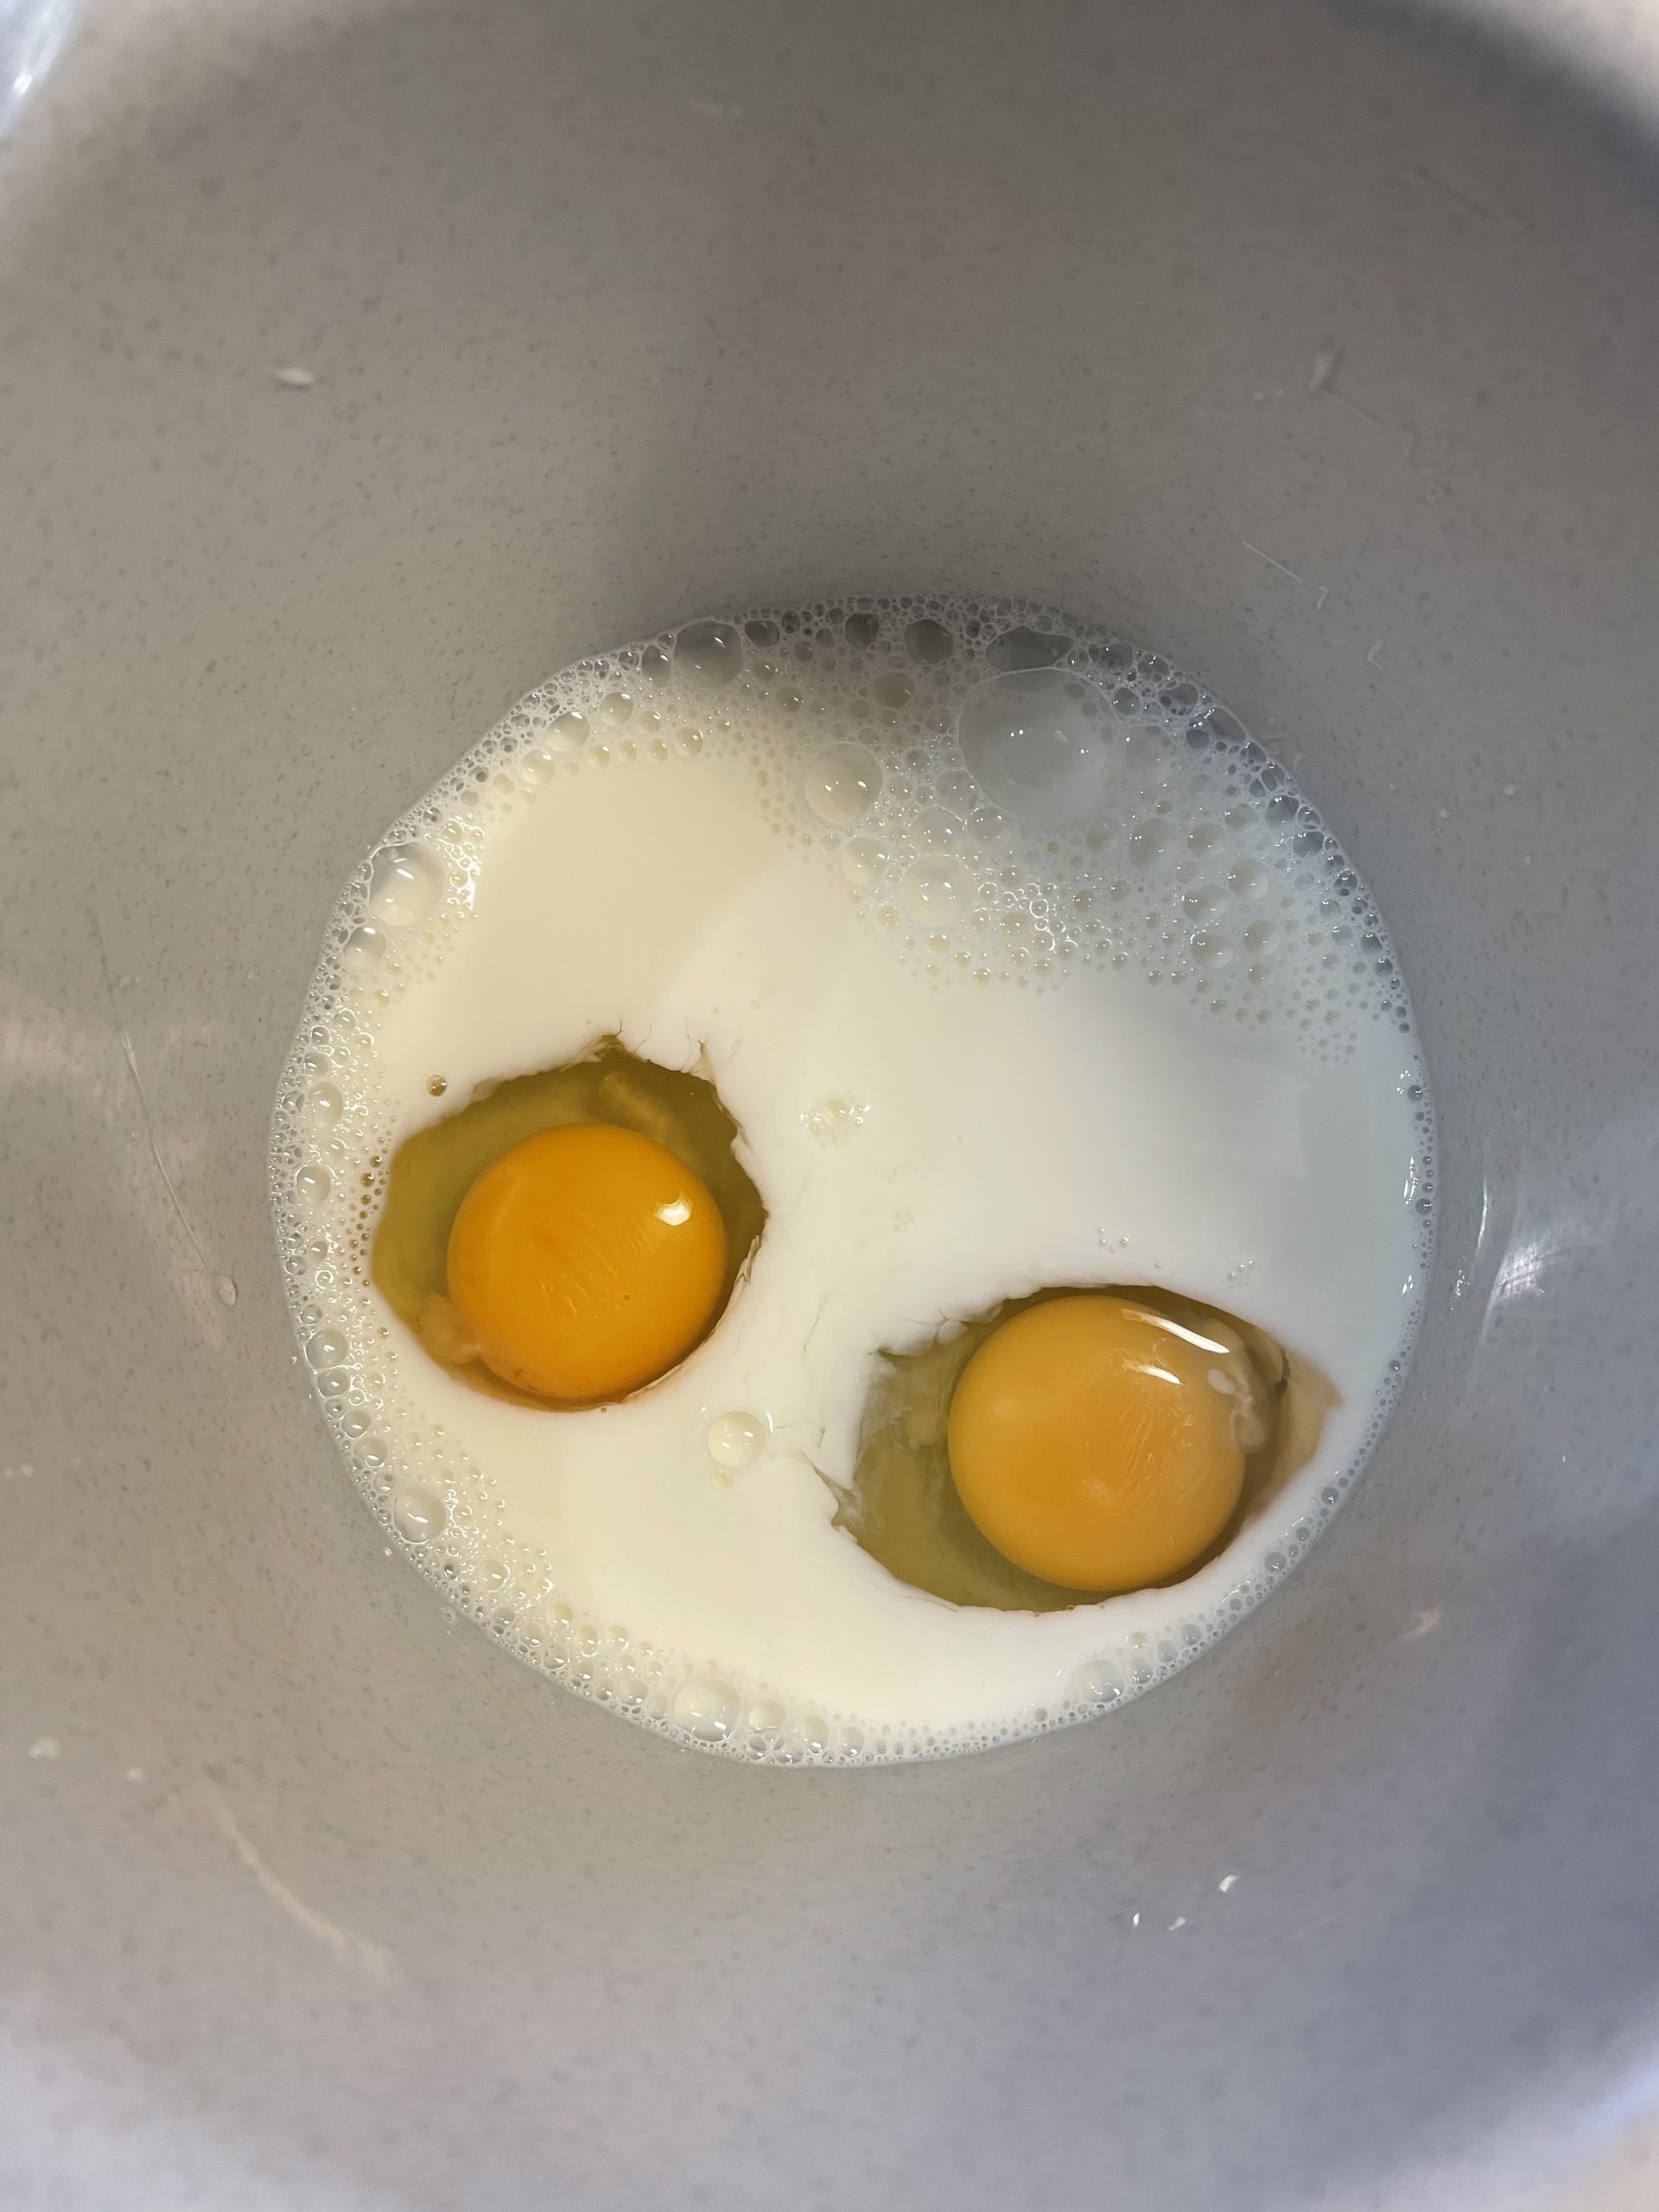 Bild zum Schritt 2 für die Kinder-Beschäftigung: 'Zuerst gebt ihr Eier und Milch in die Rührschüssel. ...'